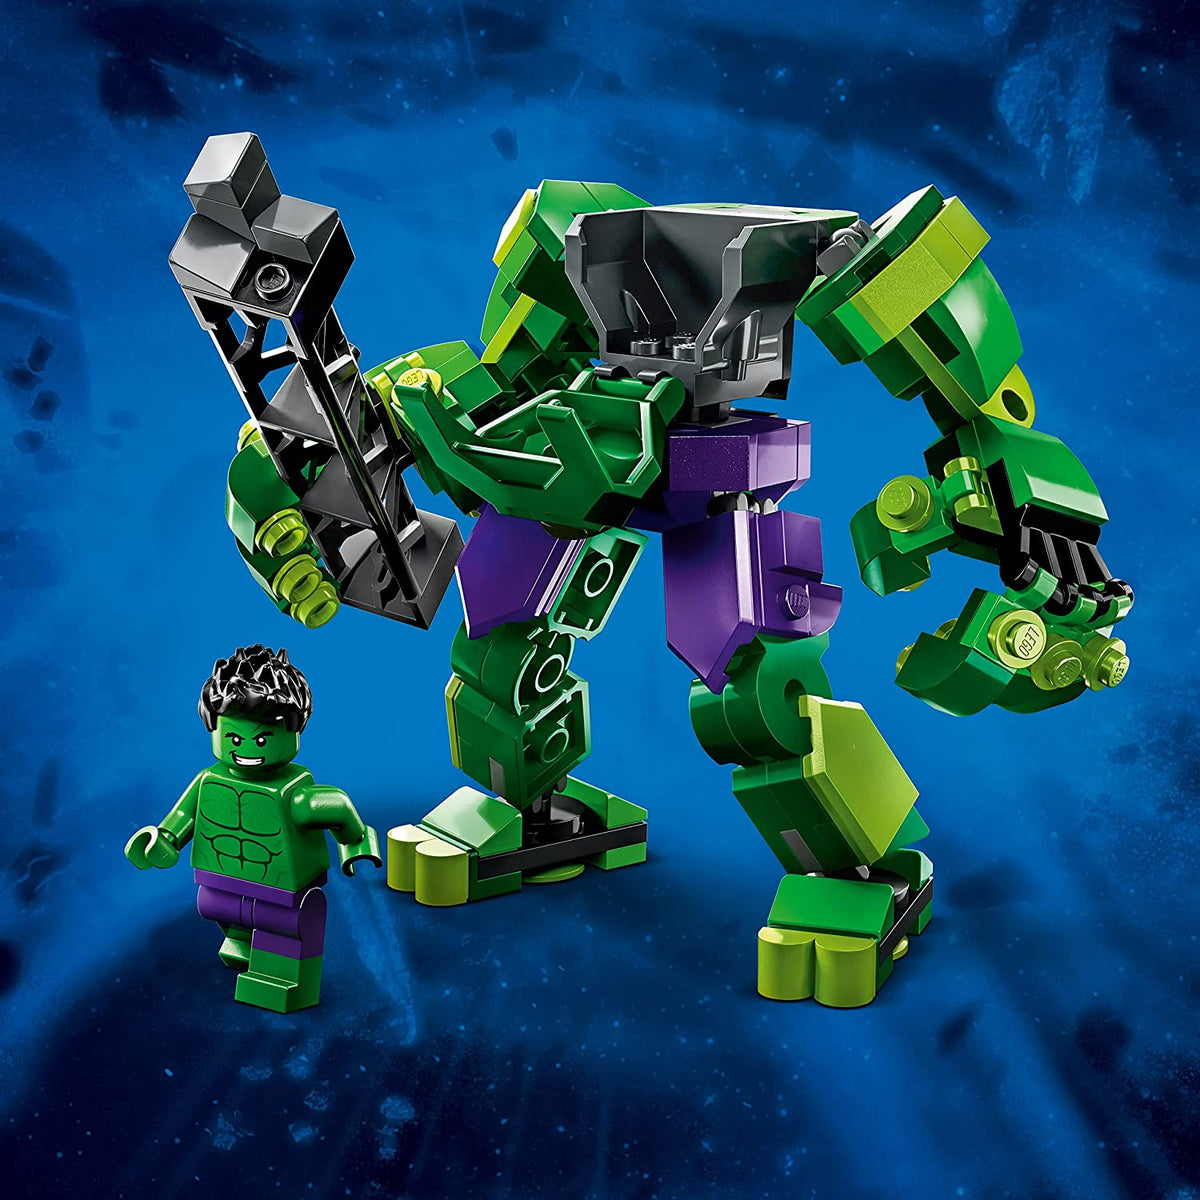 MARVEL 76241: Hulk Mech Armor